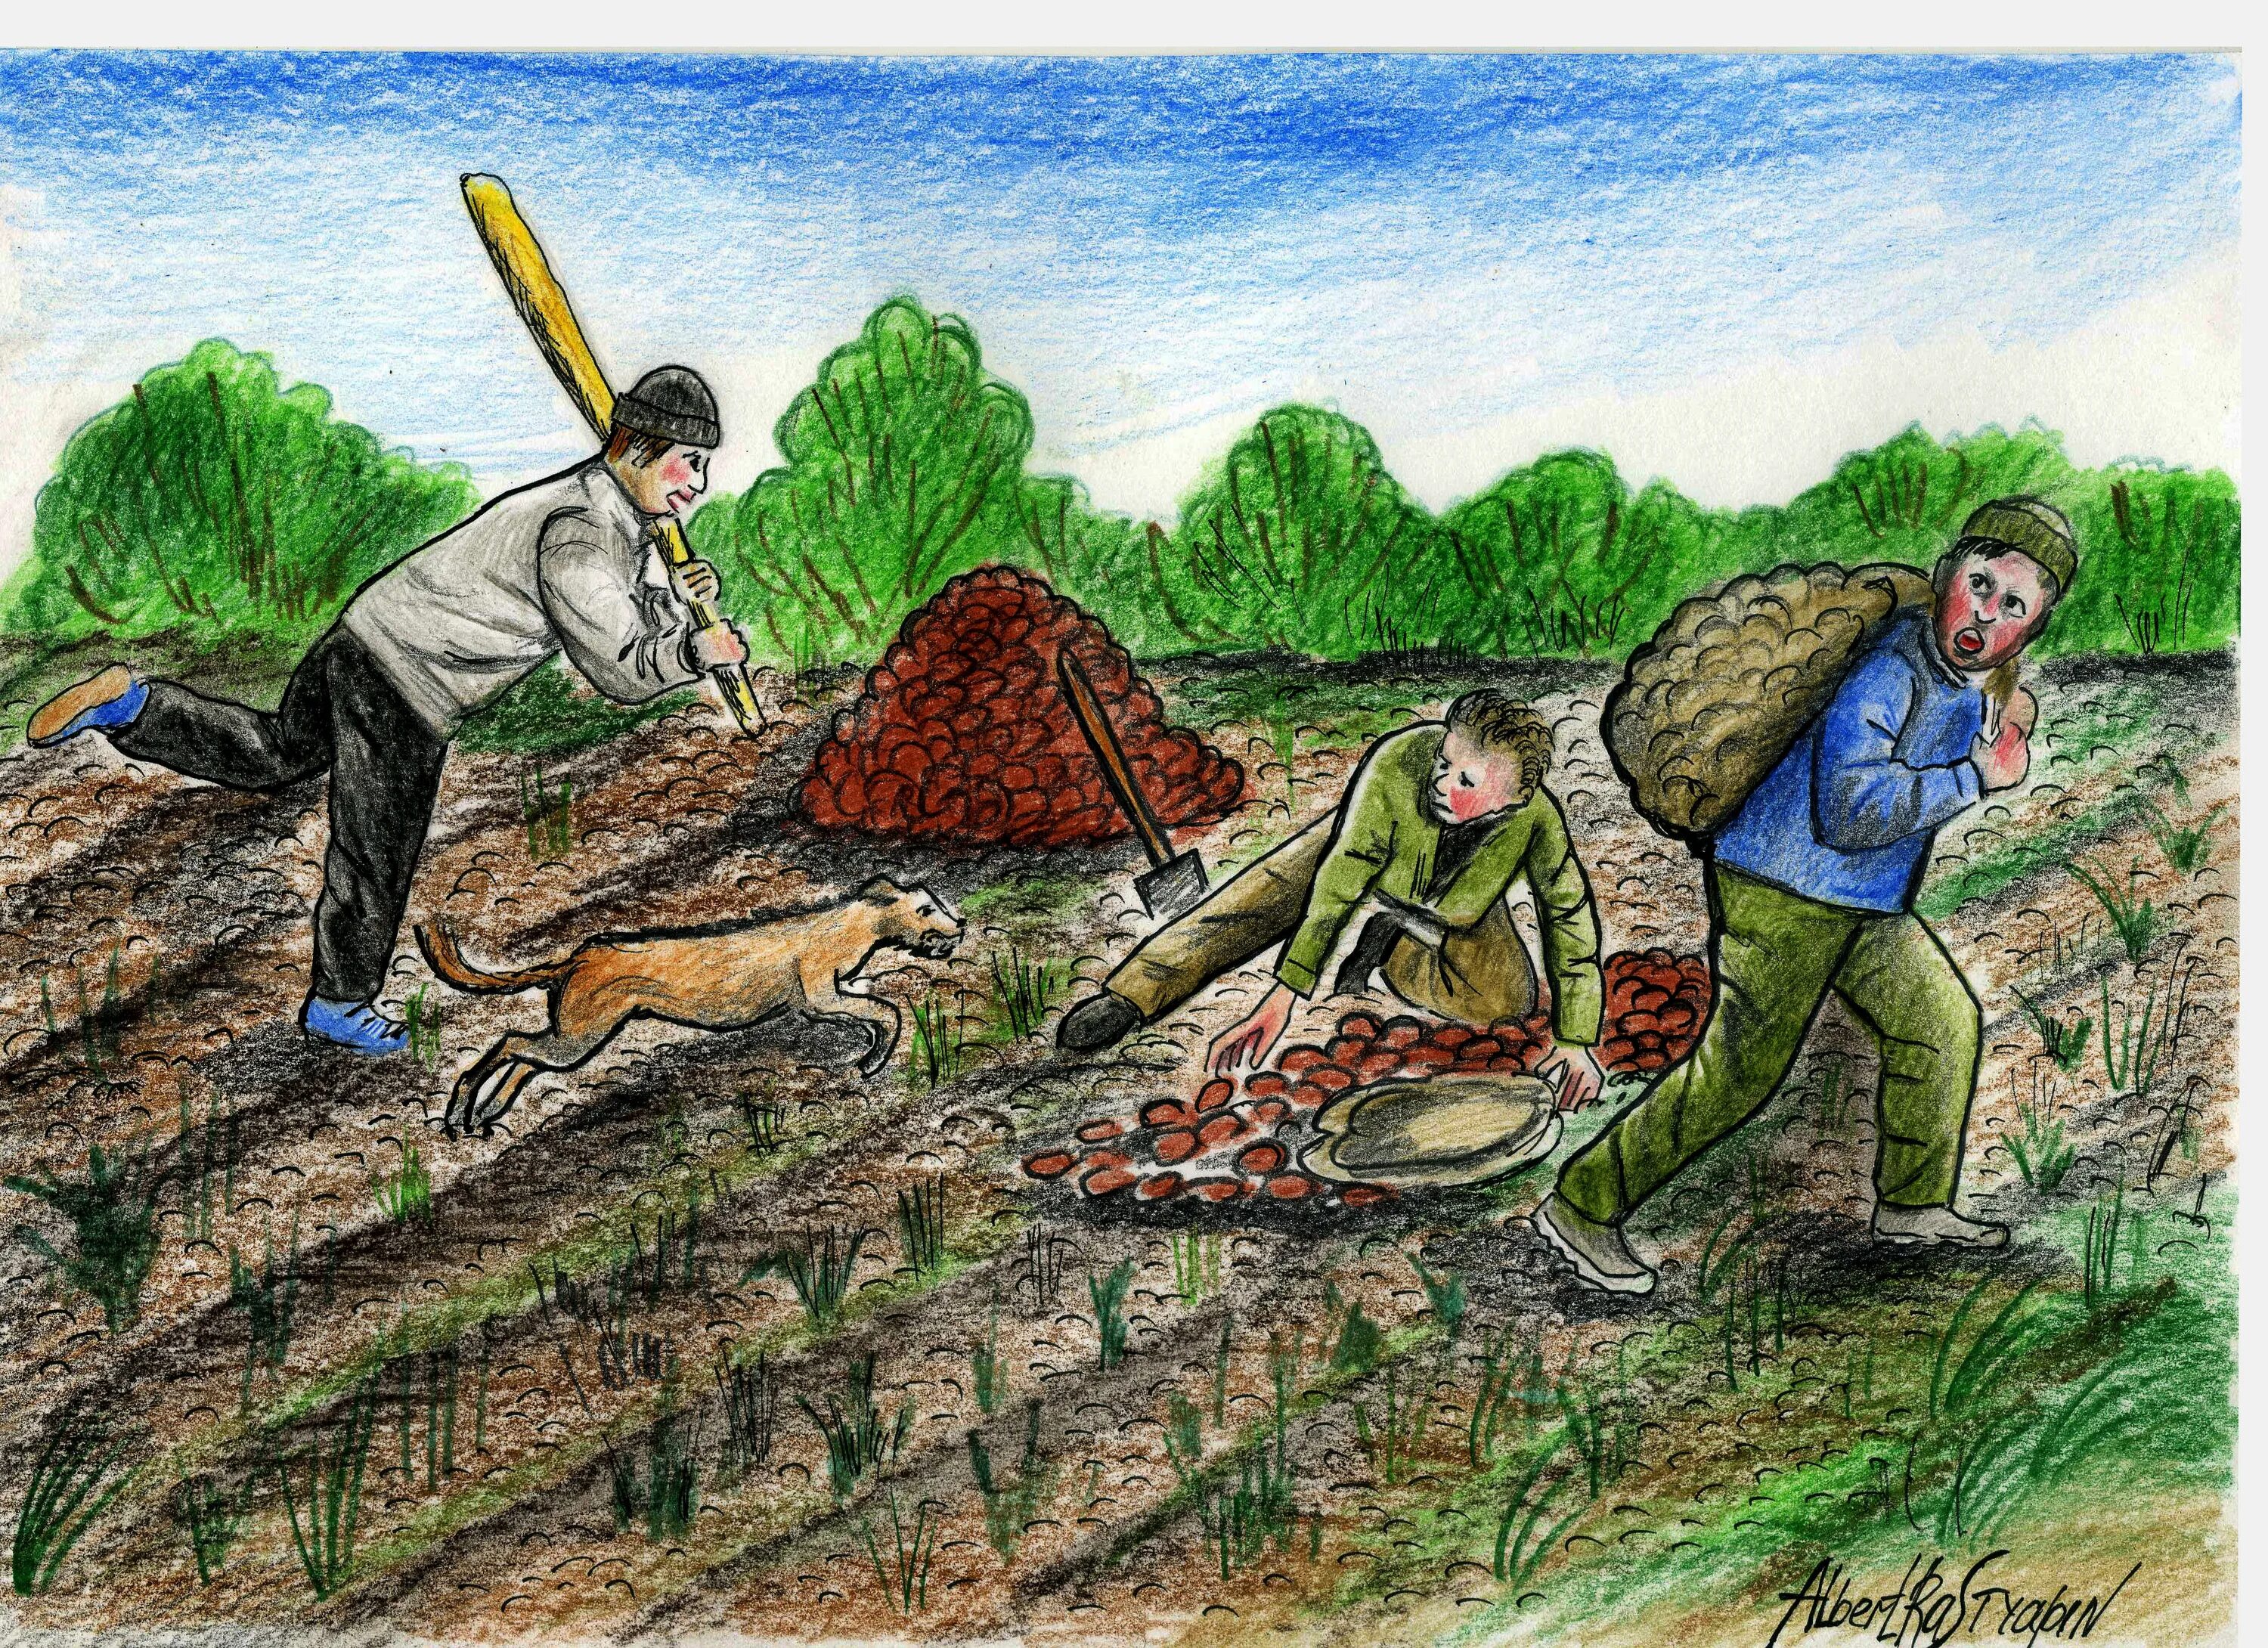 Копают картошку карикатура. Люди копают картошку. Копают урожай. Работа в огороде рисунок. Двое пашут семеро руками машут пословица